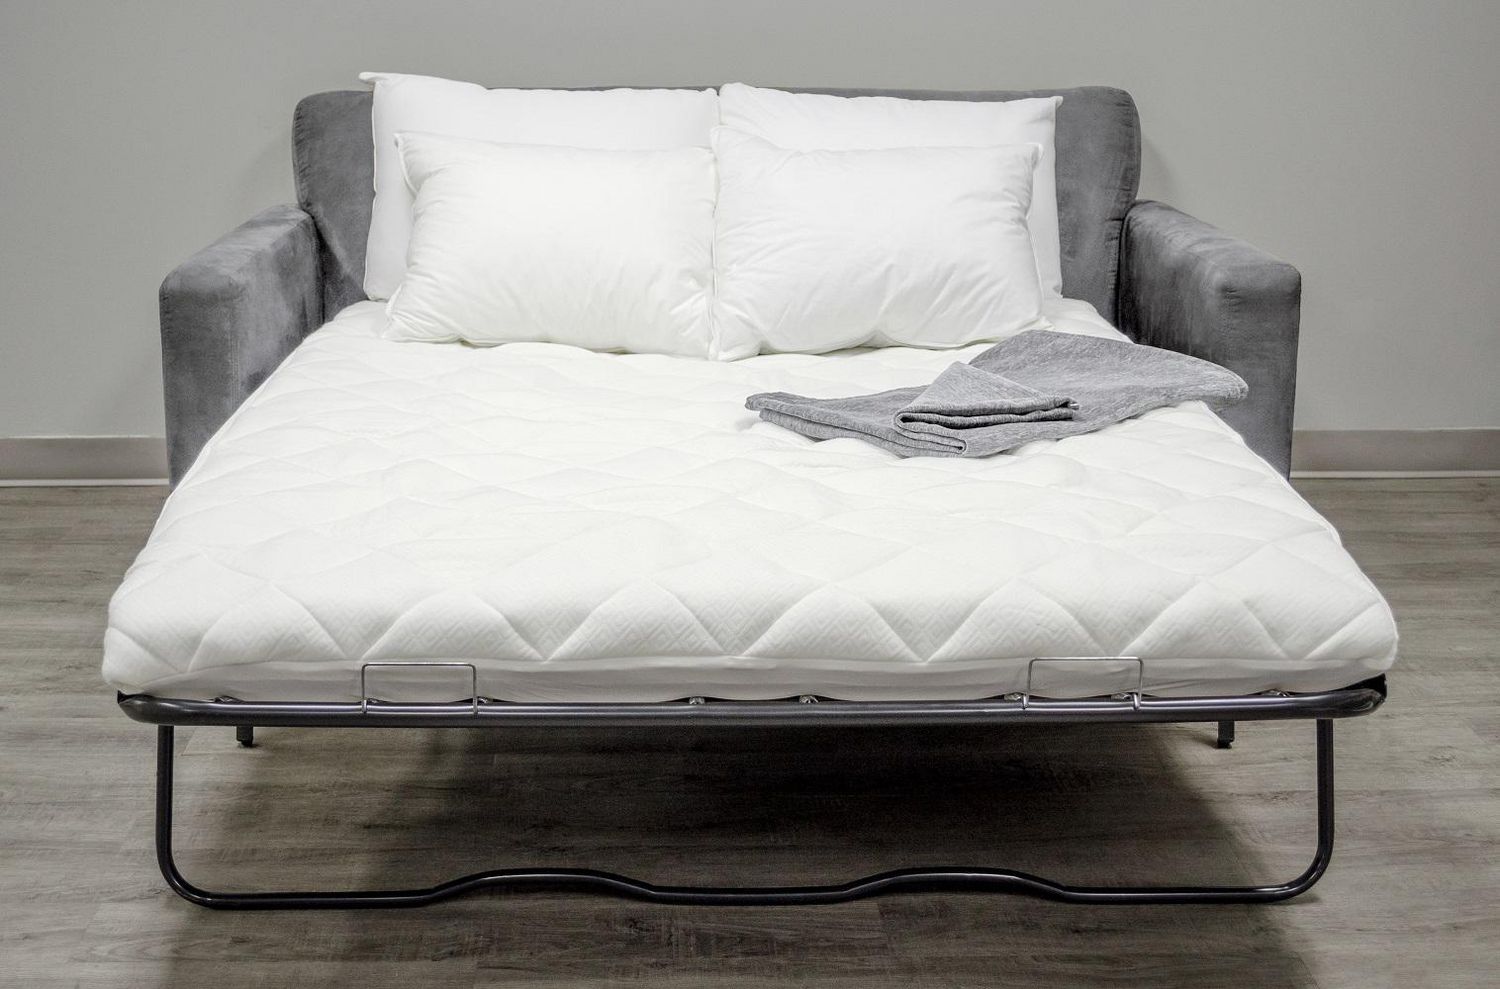 sofa bed mattress pad canada